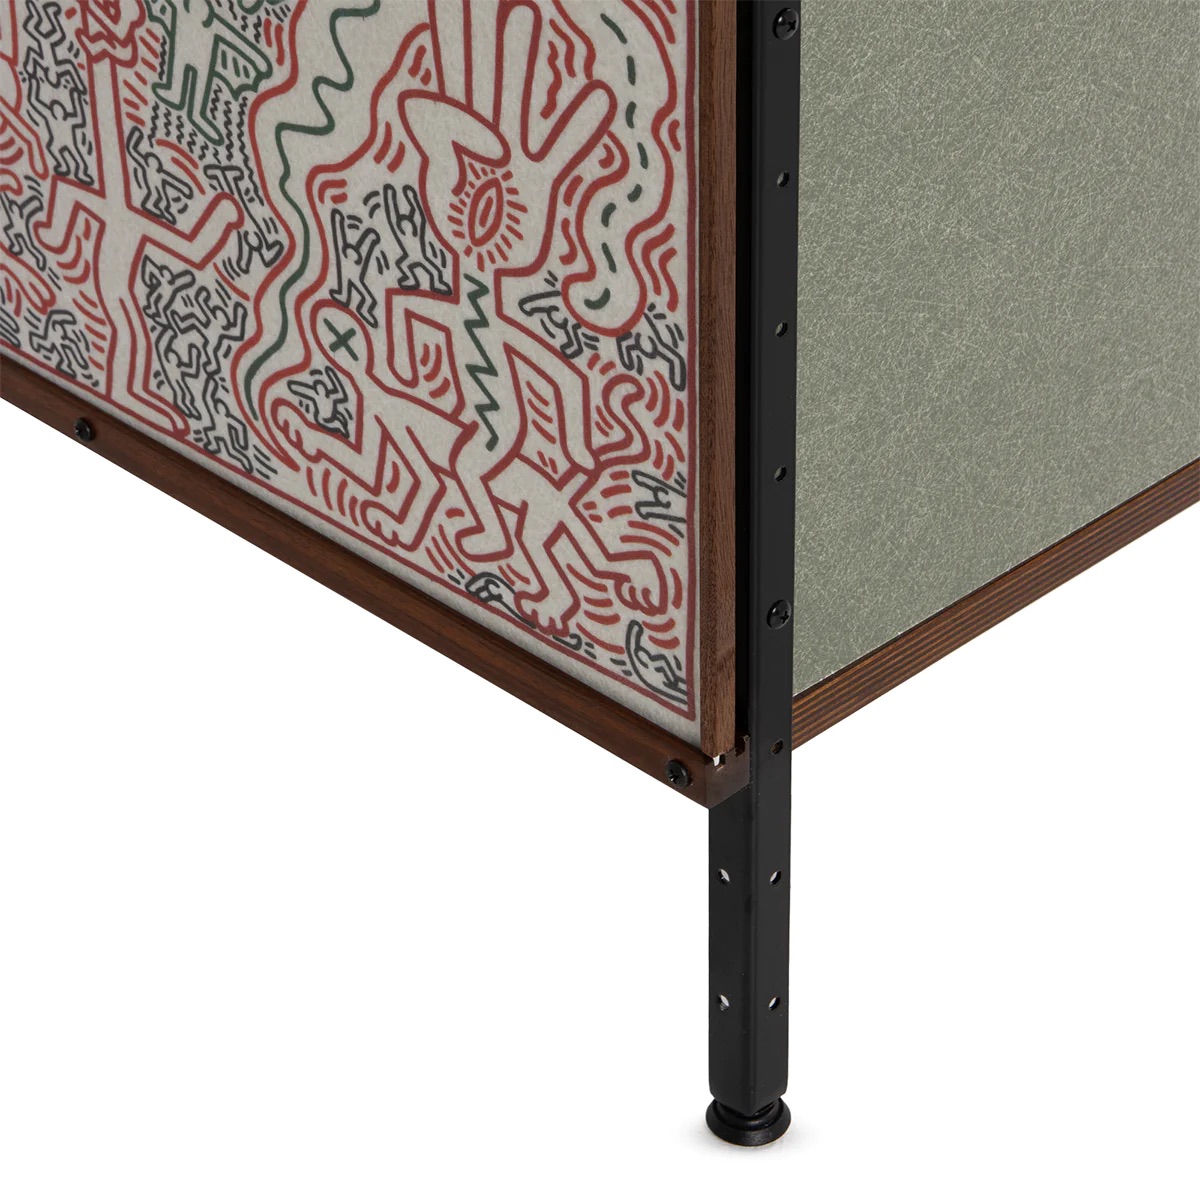 Keith Haring "Untitled, 1983" Display Shelf/Dresser - Bild 4 aus 4